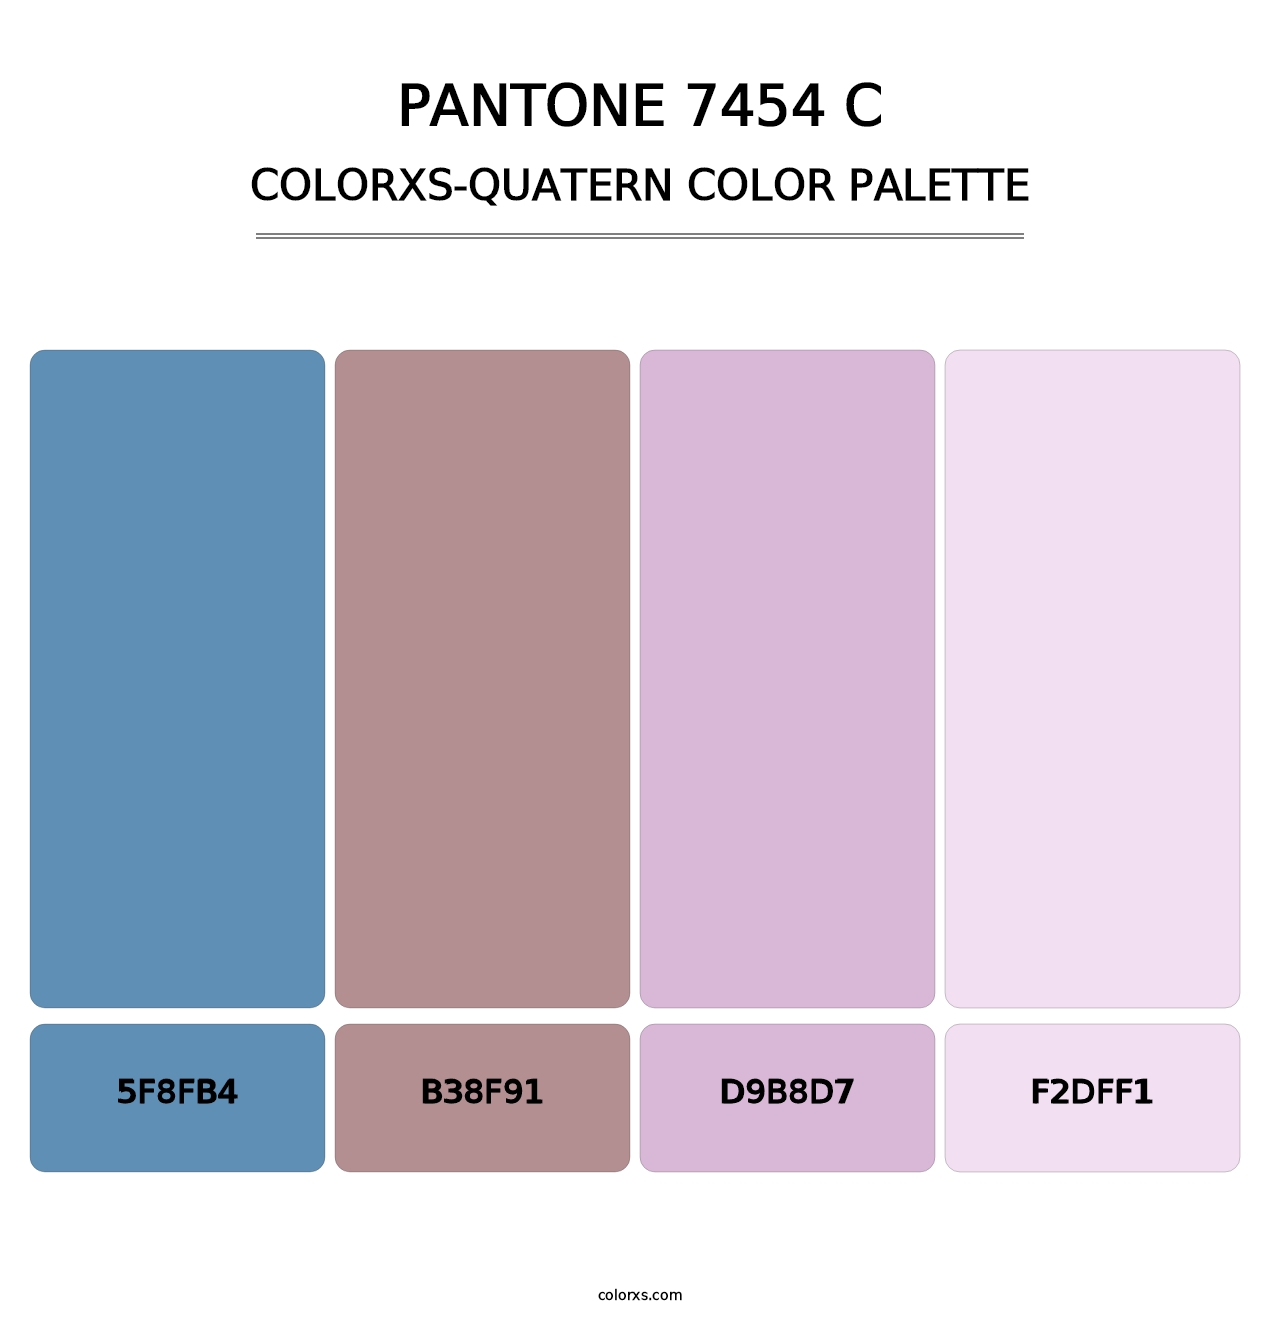 PANTONE 7454 C - Colorxs Quatern Palette